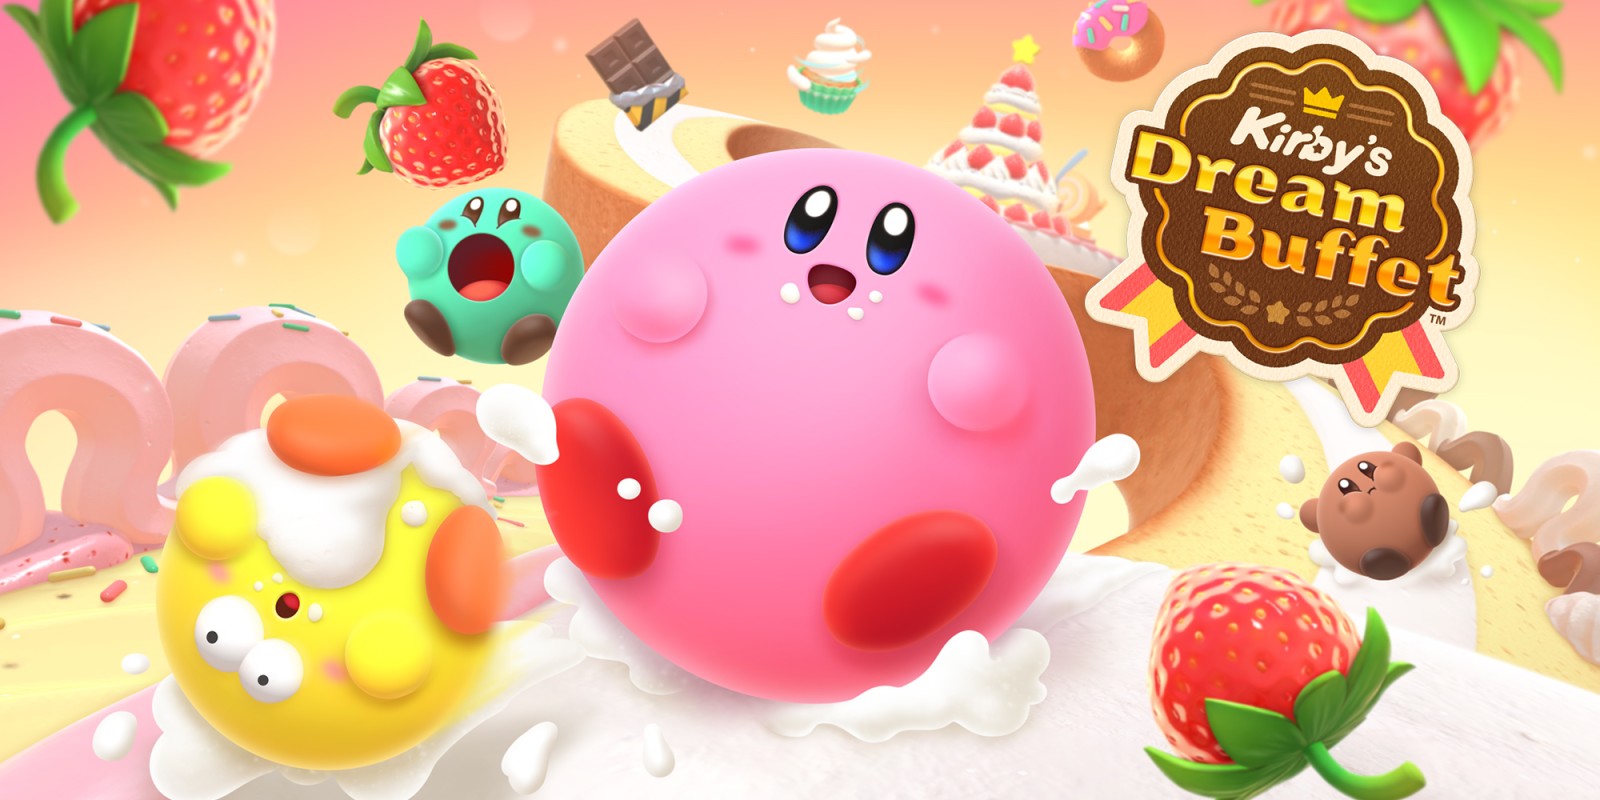 Ankündigung von Kirby's Dream Buffet - Arcade-Wettkampf über das Essen von Leckereien